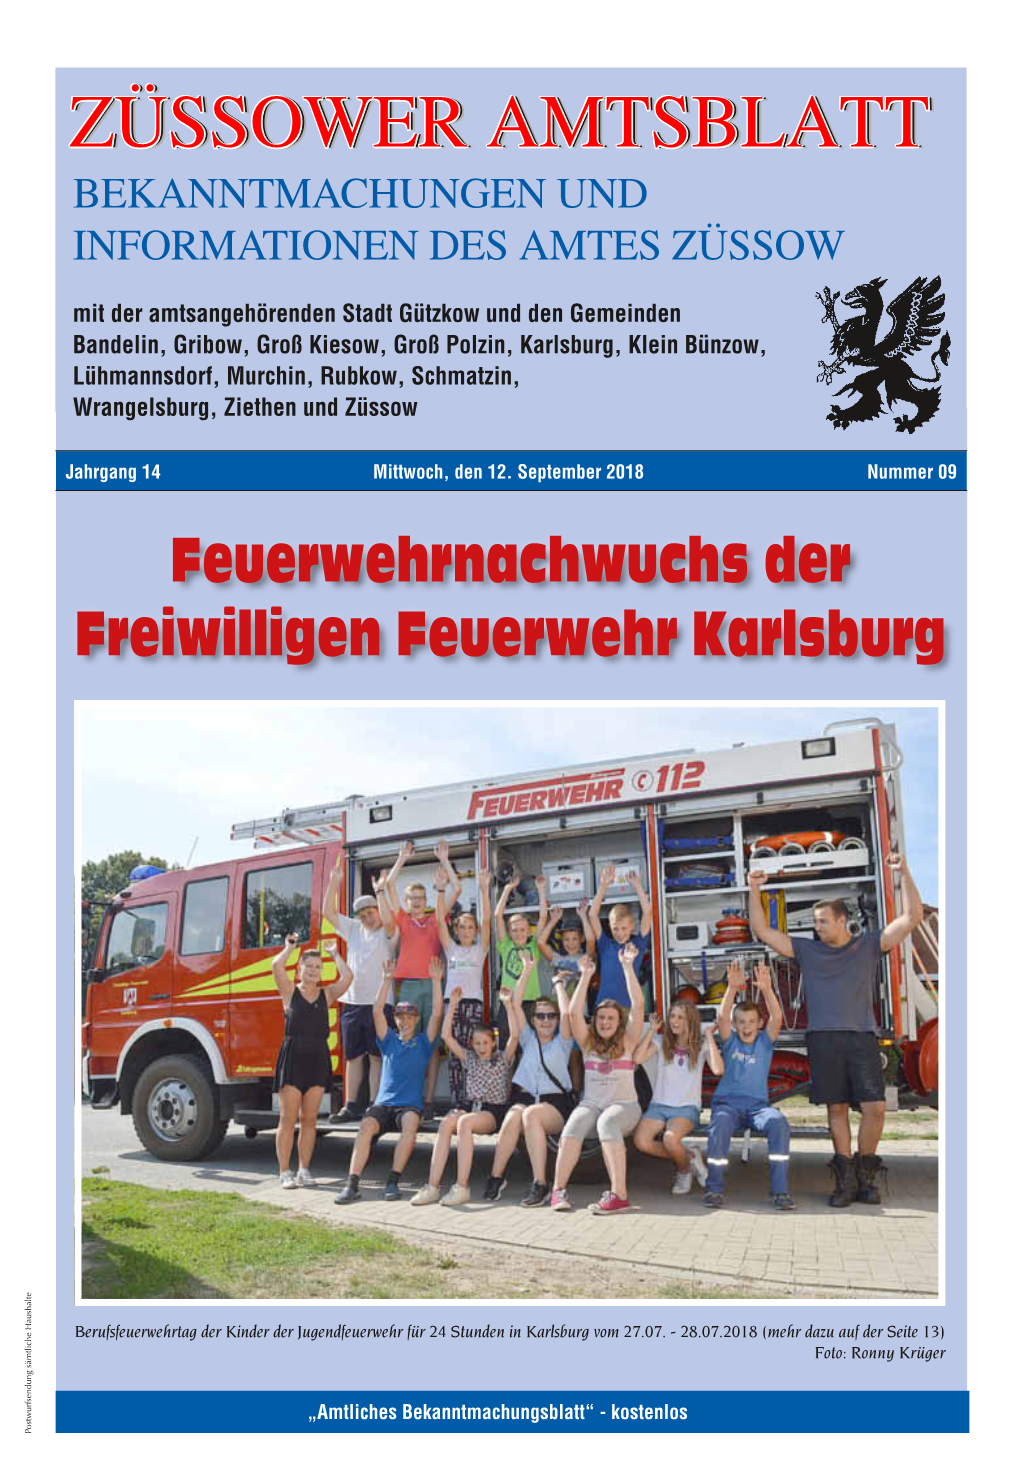 Züssower Amtsblatt Nr. 09 / 2018